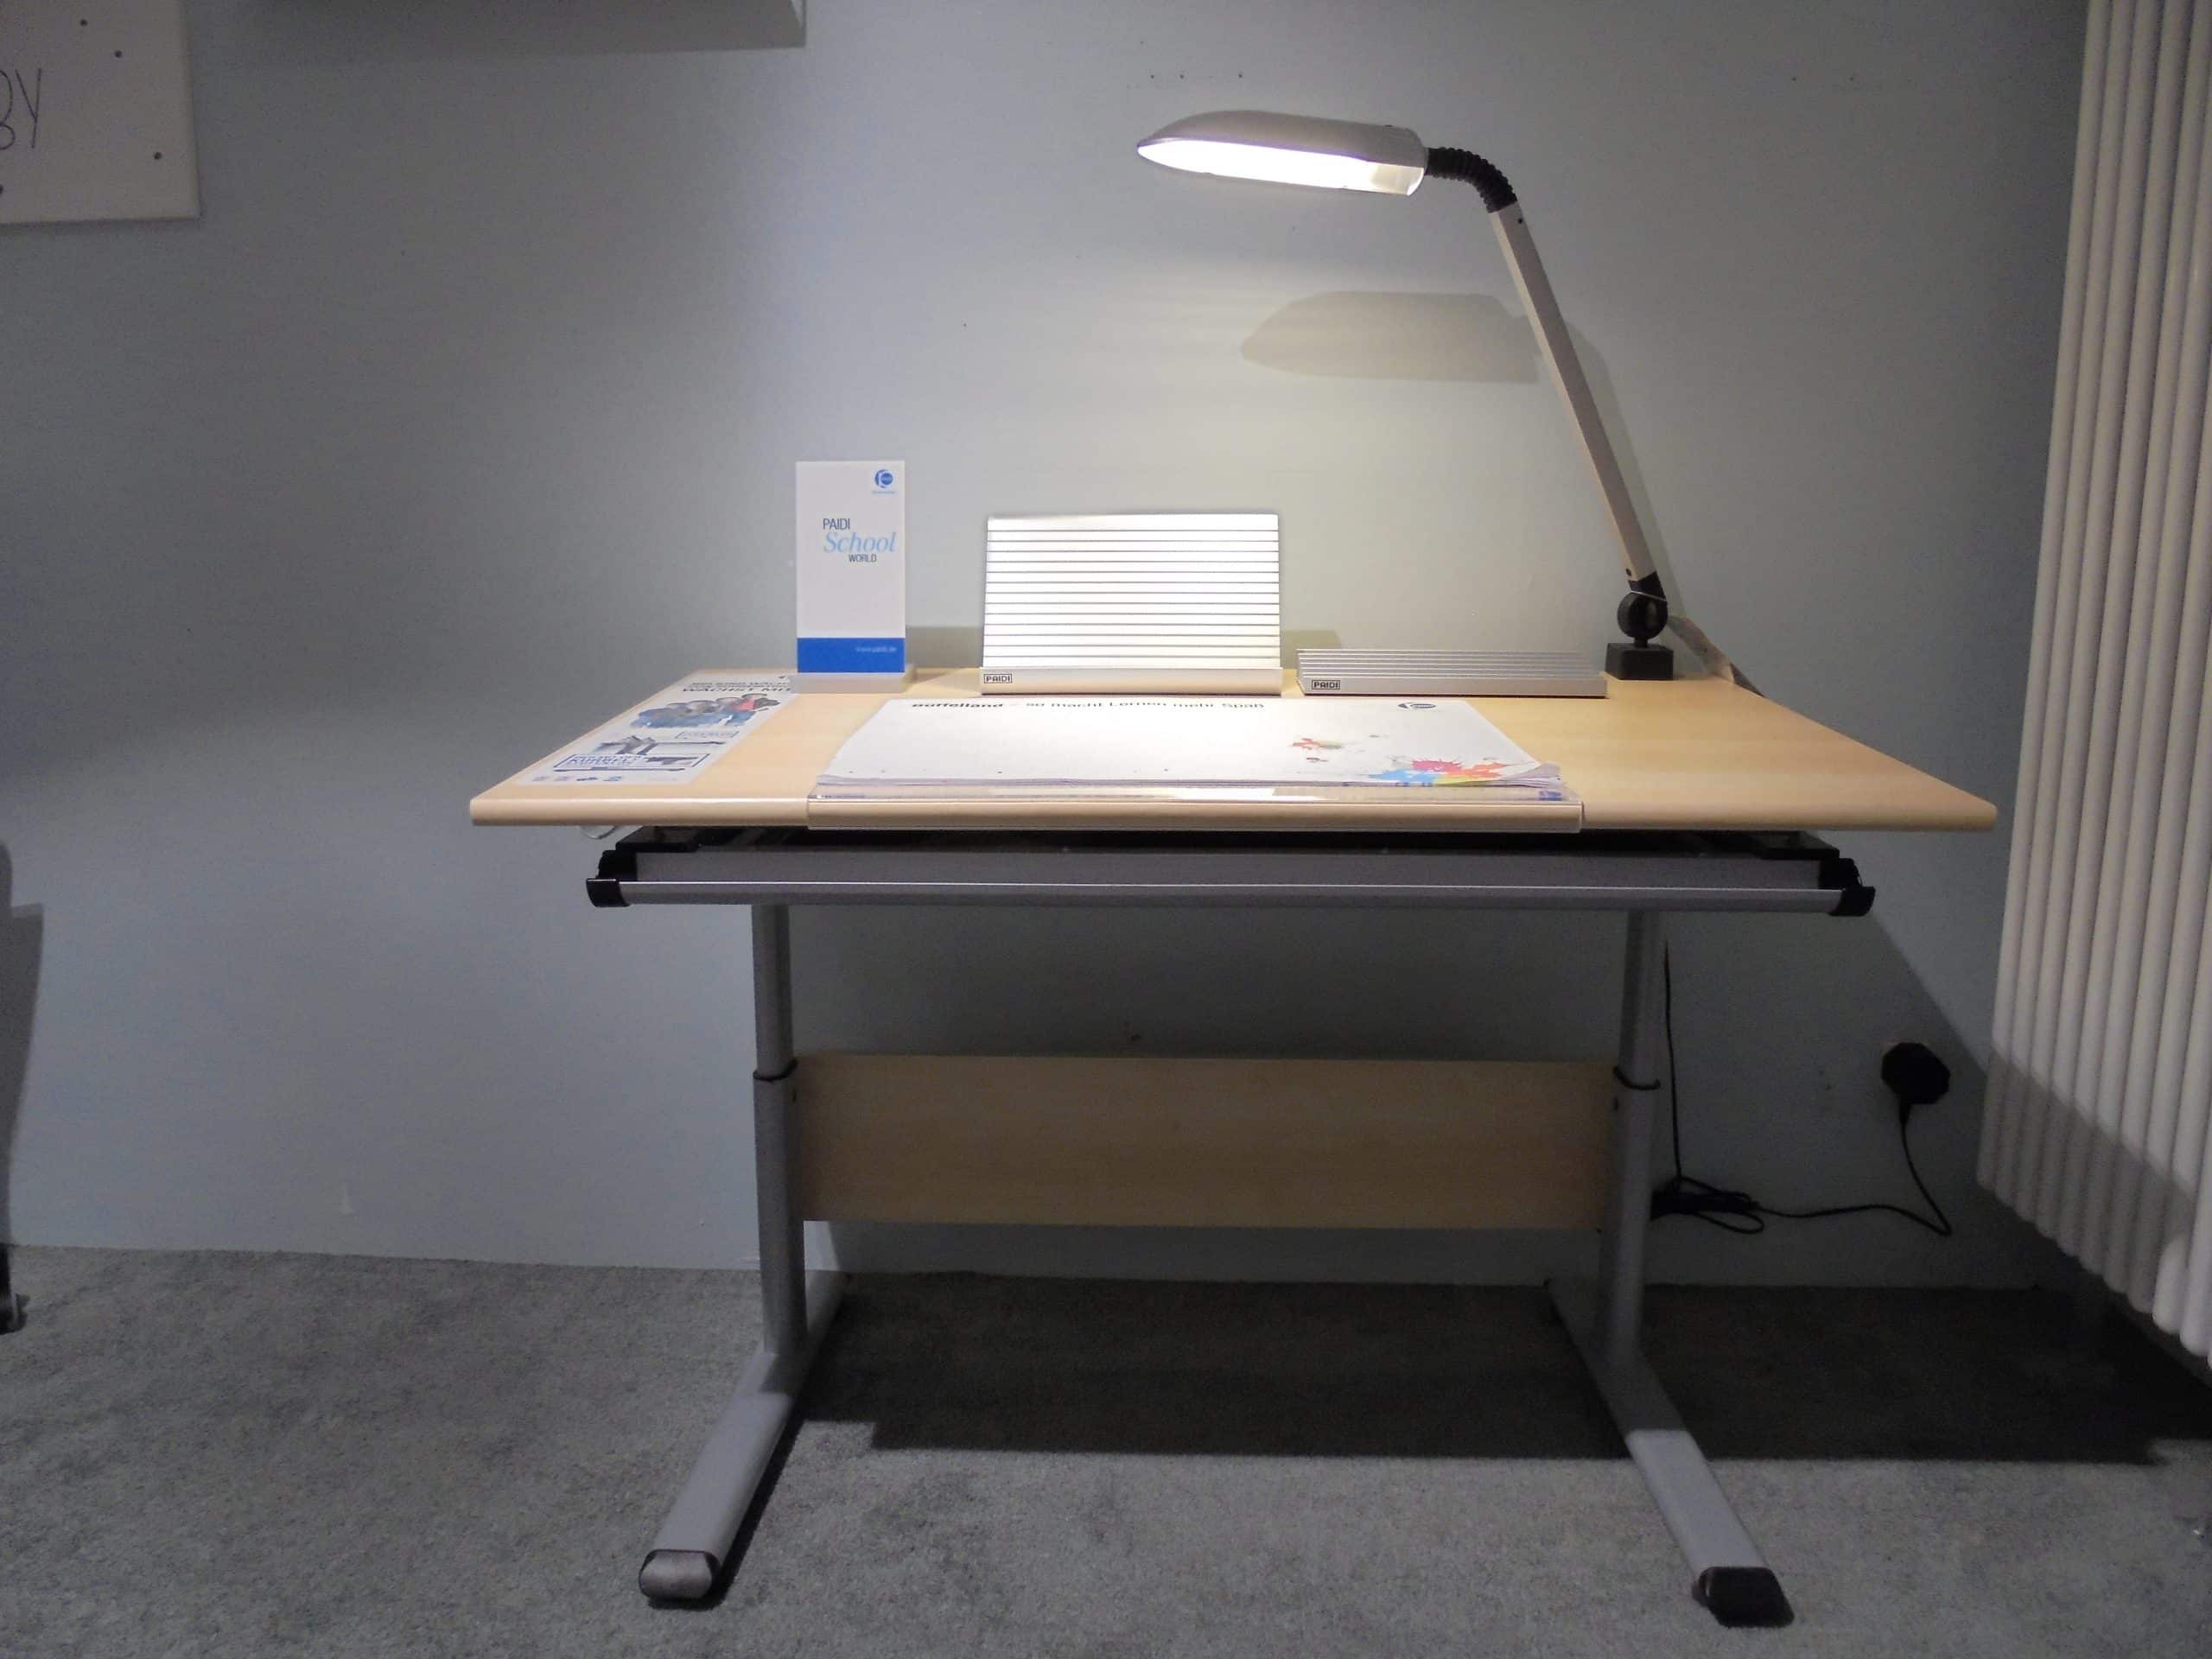 Im Möbelhaus Thiex gibt es derzeit einen Abverkauf des Schreibtisches Marco in Ahorn-Nachbildung. Der Schreibtisch hat eine Größe von 70x120 cm und ist zusammen mit vielen Zubehörteilen um 31% reduziert.